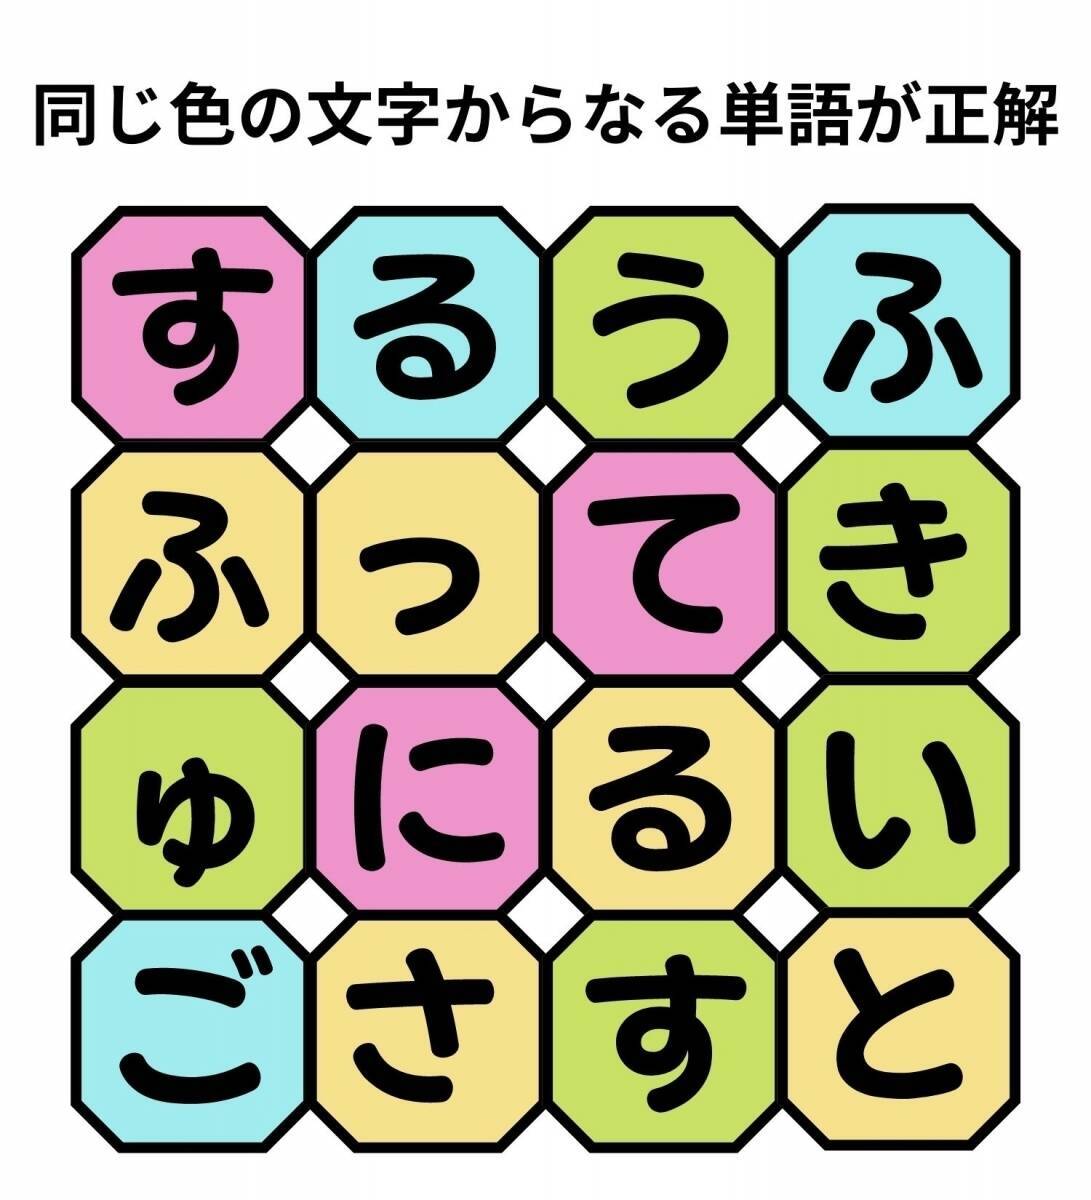 【単語パズル Vol.100】3文字と5文字の球技を見つけて！